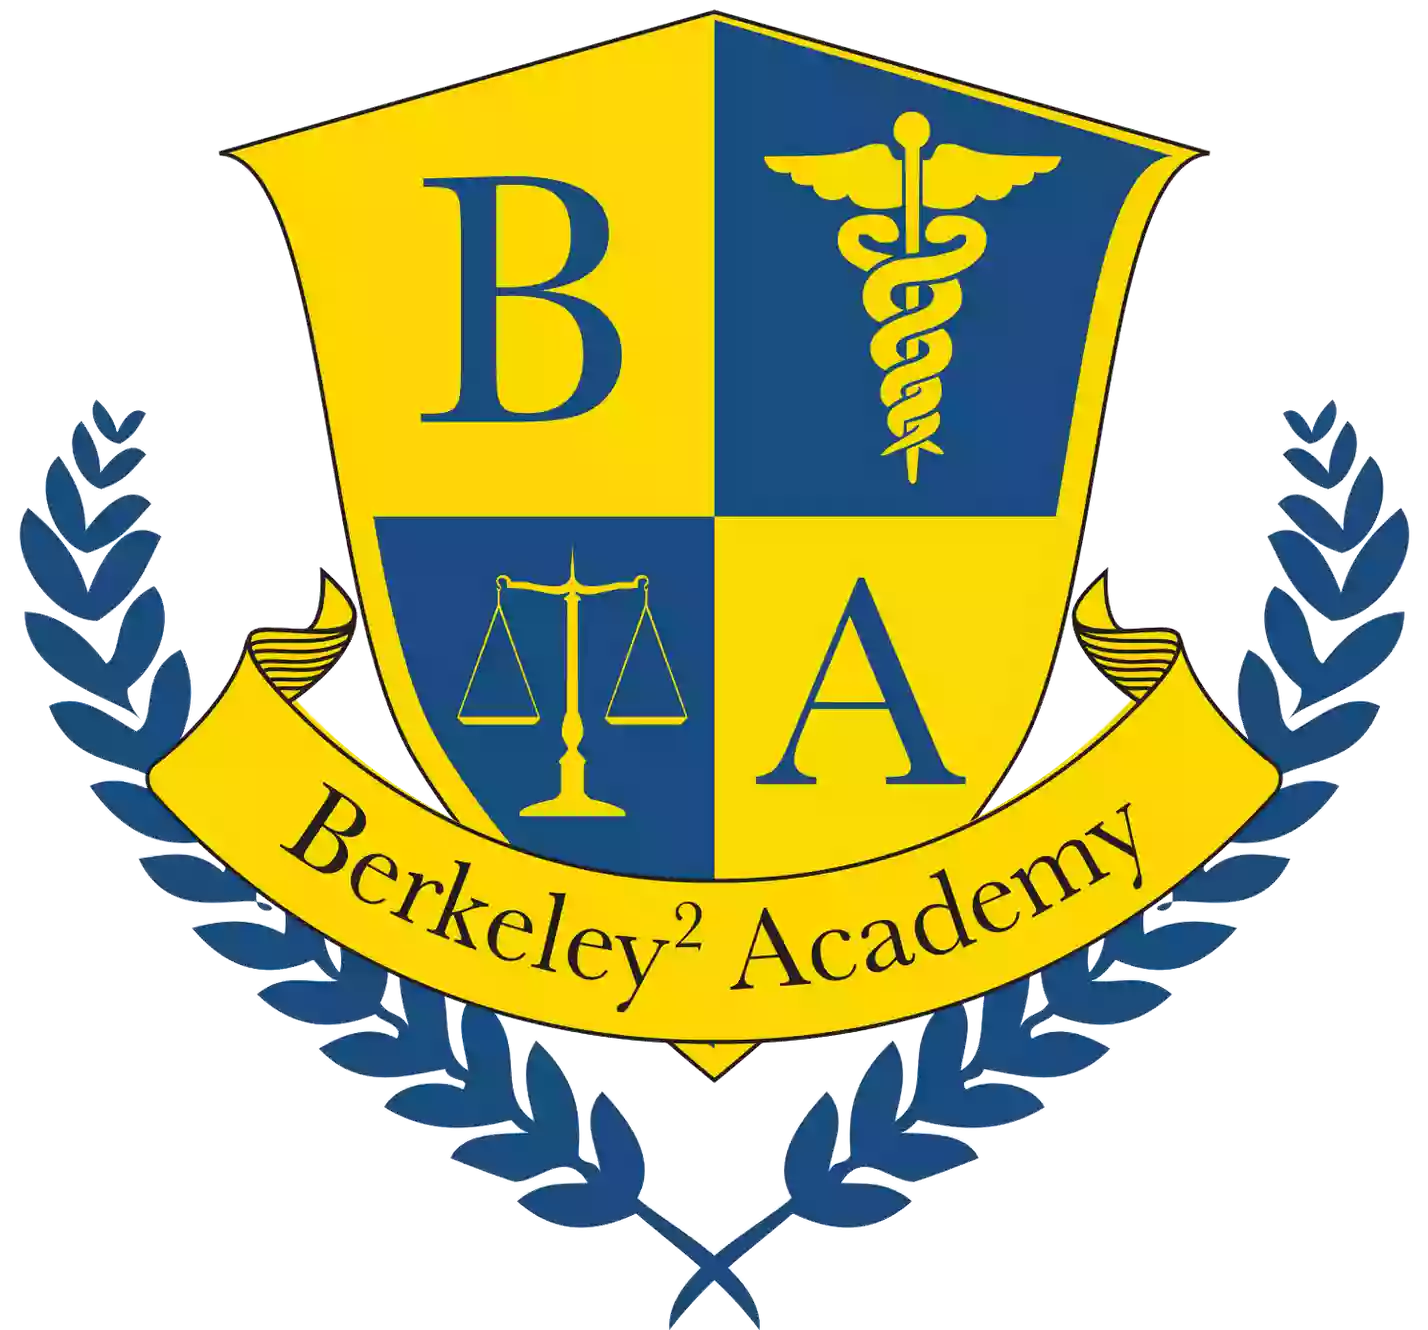 Berkeley2 Academy: Northwest Branch